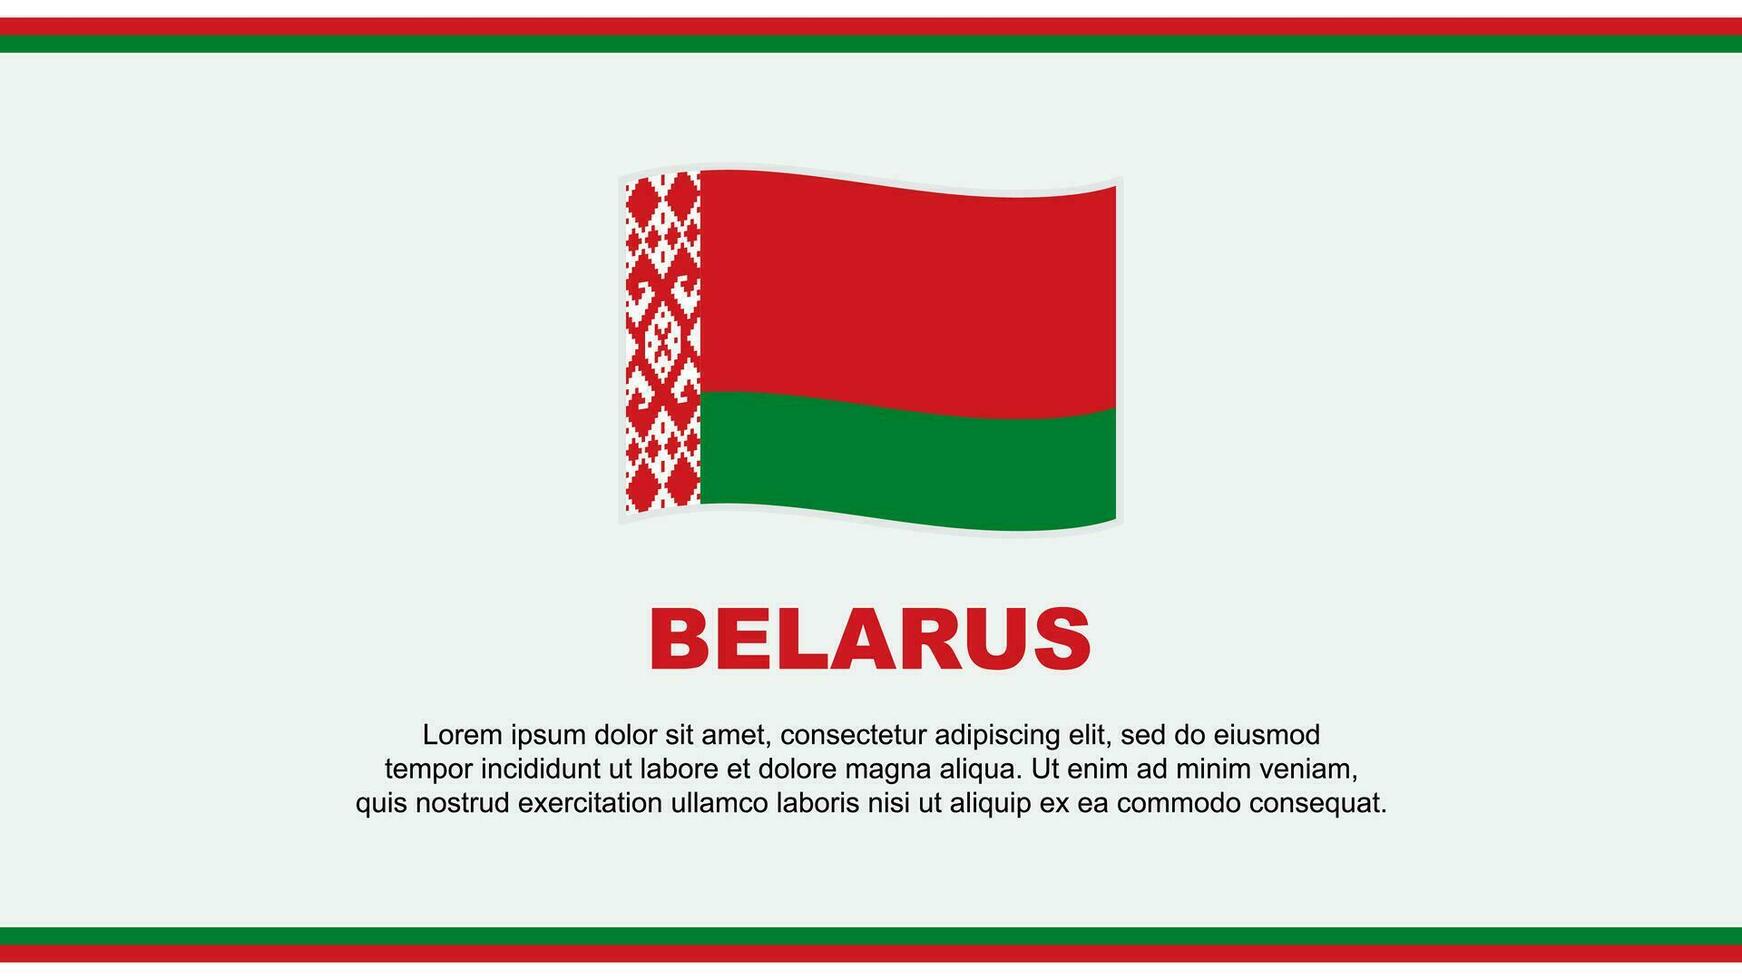 Belarus Flag Abstract Background Design Template. Belarus Independence Day Banner Social Media Vector Illustration. Belarus Design